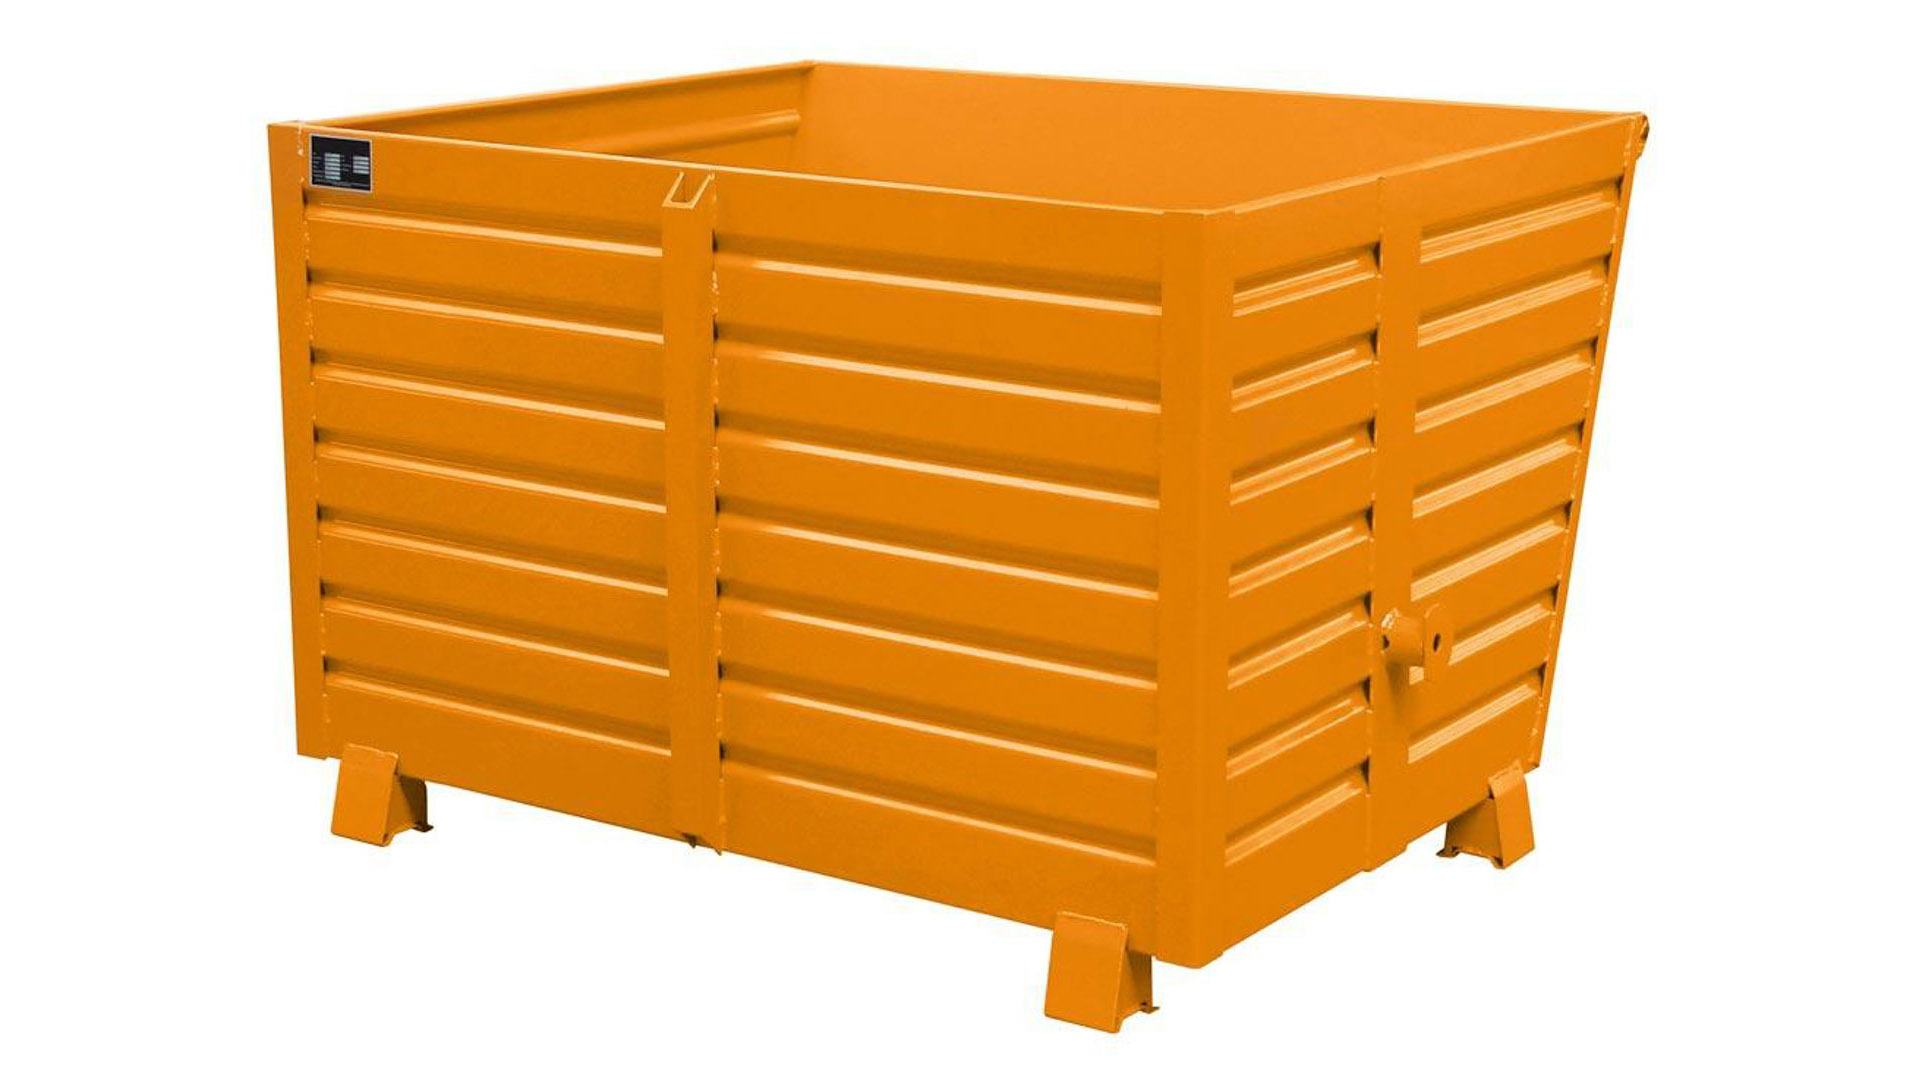 Stapelkipper 1.500 l - 2.000 kg - 1200x1500x1000 mm - 3-Fach stapelbar - orange